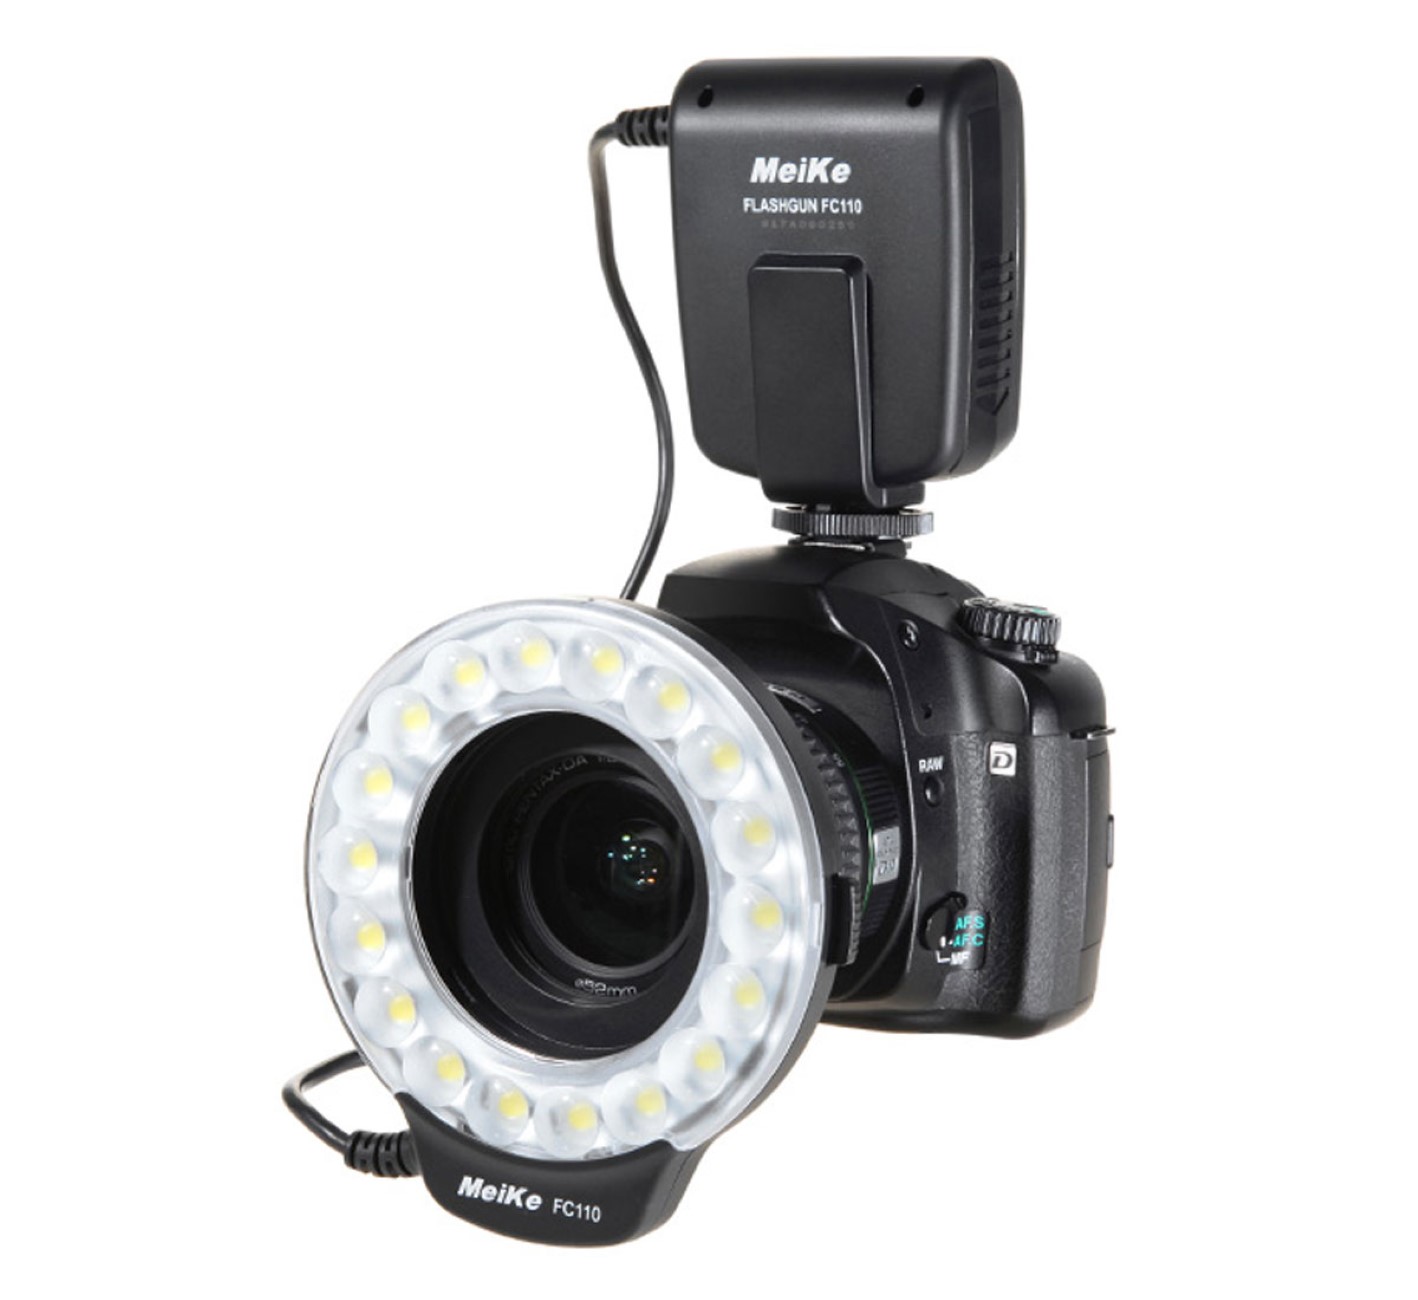 Makro Ringblitz Ringleuchte für Sony DSLR Kameras mit Sony/Minolta Blitzschuh, Meike FC-110 Blitz & Dauerlicht, auch für Videoaufnahmen